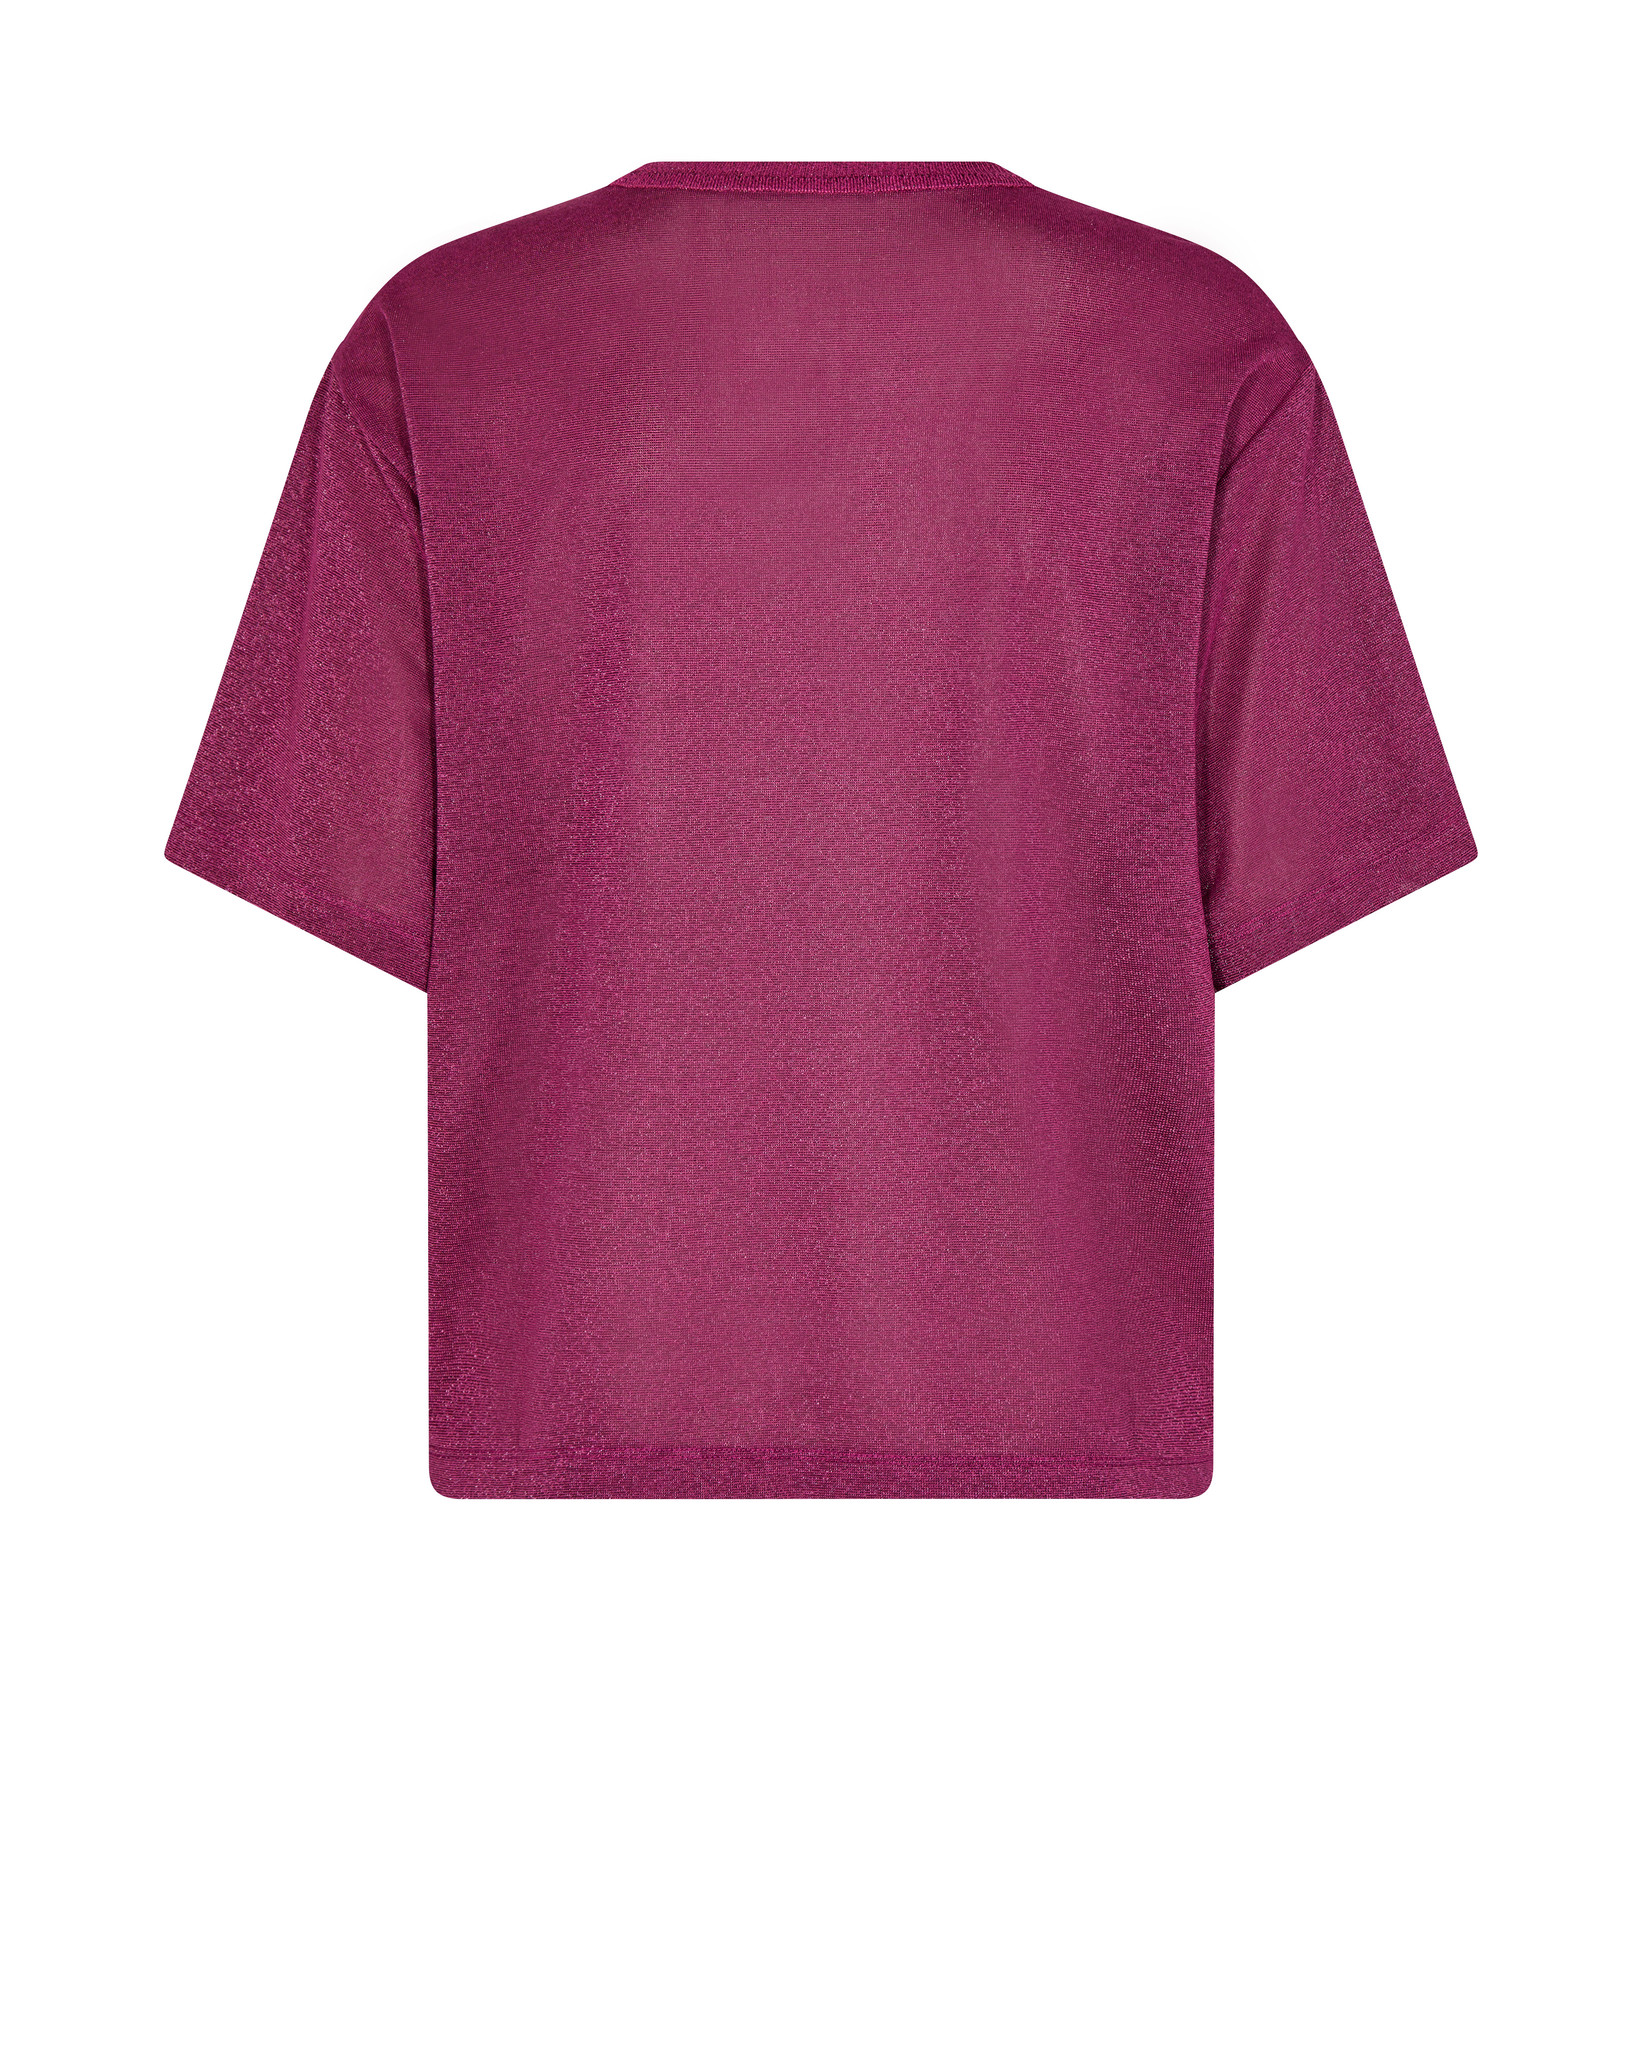 MosMosh shirt KIT 146800-2